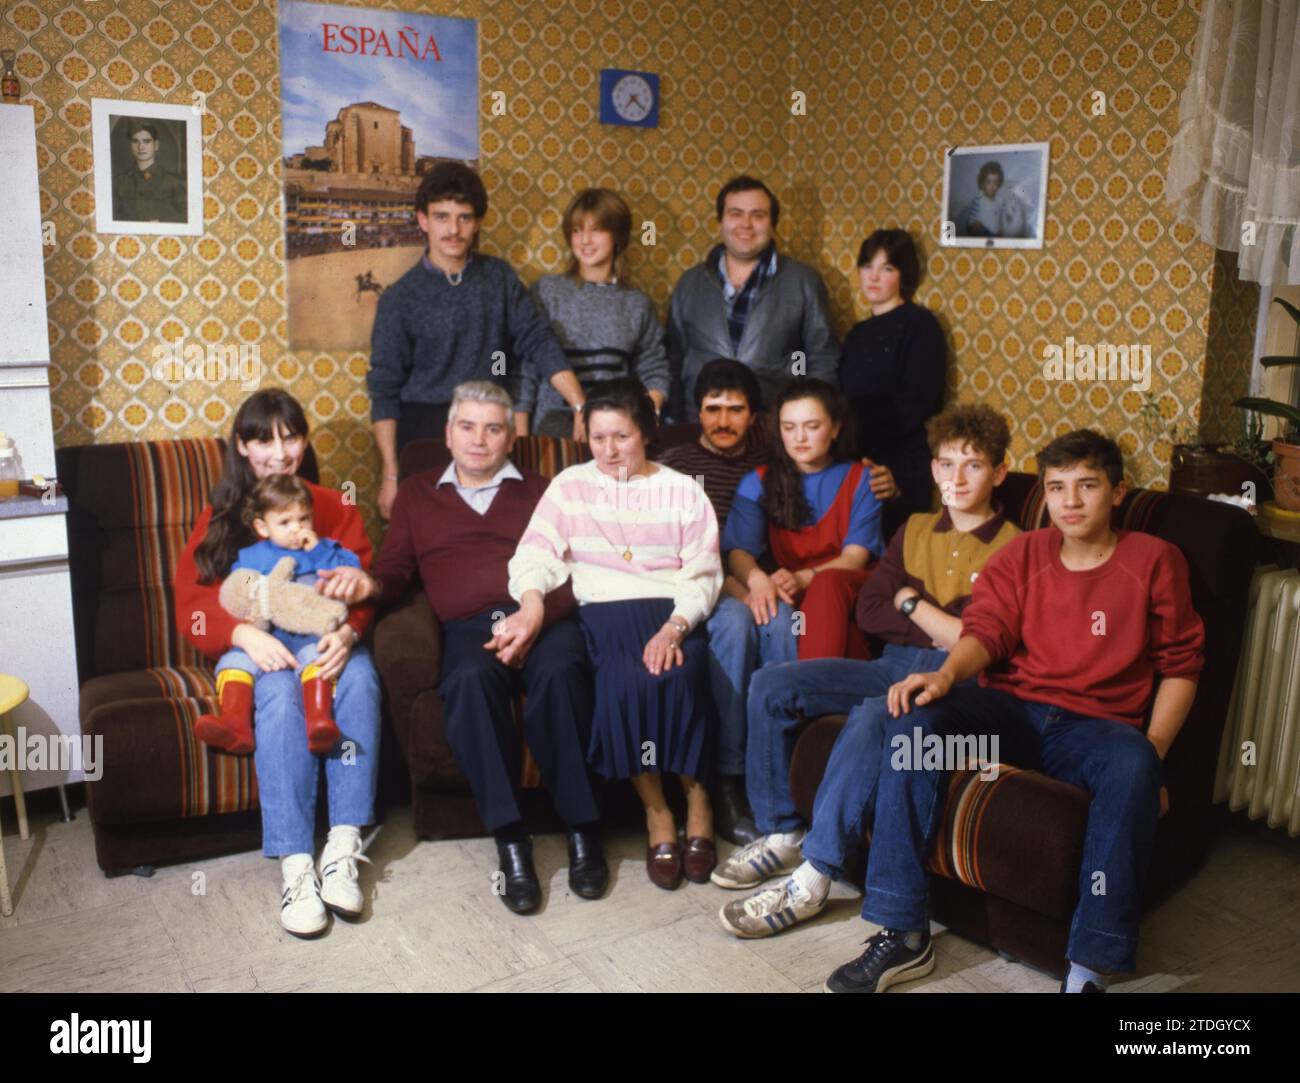 DEU, Deutschland: Die historischen Rutschen aus den 84-85 r Jahren Dortmund. Große spanische Familie. Migranten. CA. 1984 Stockfoto